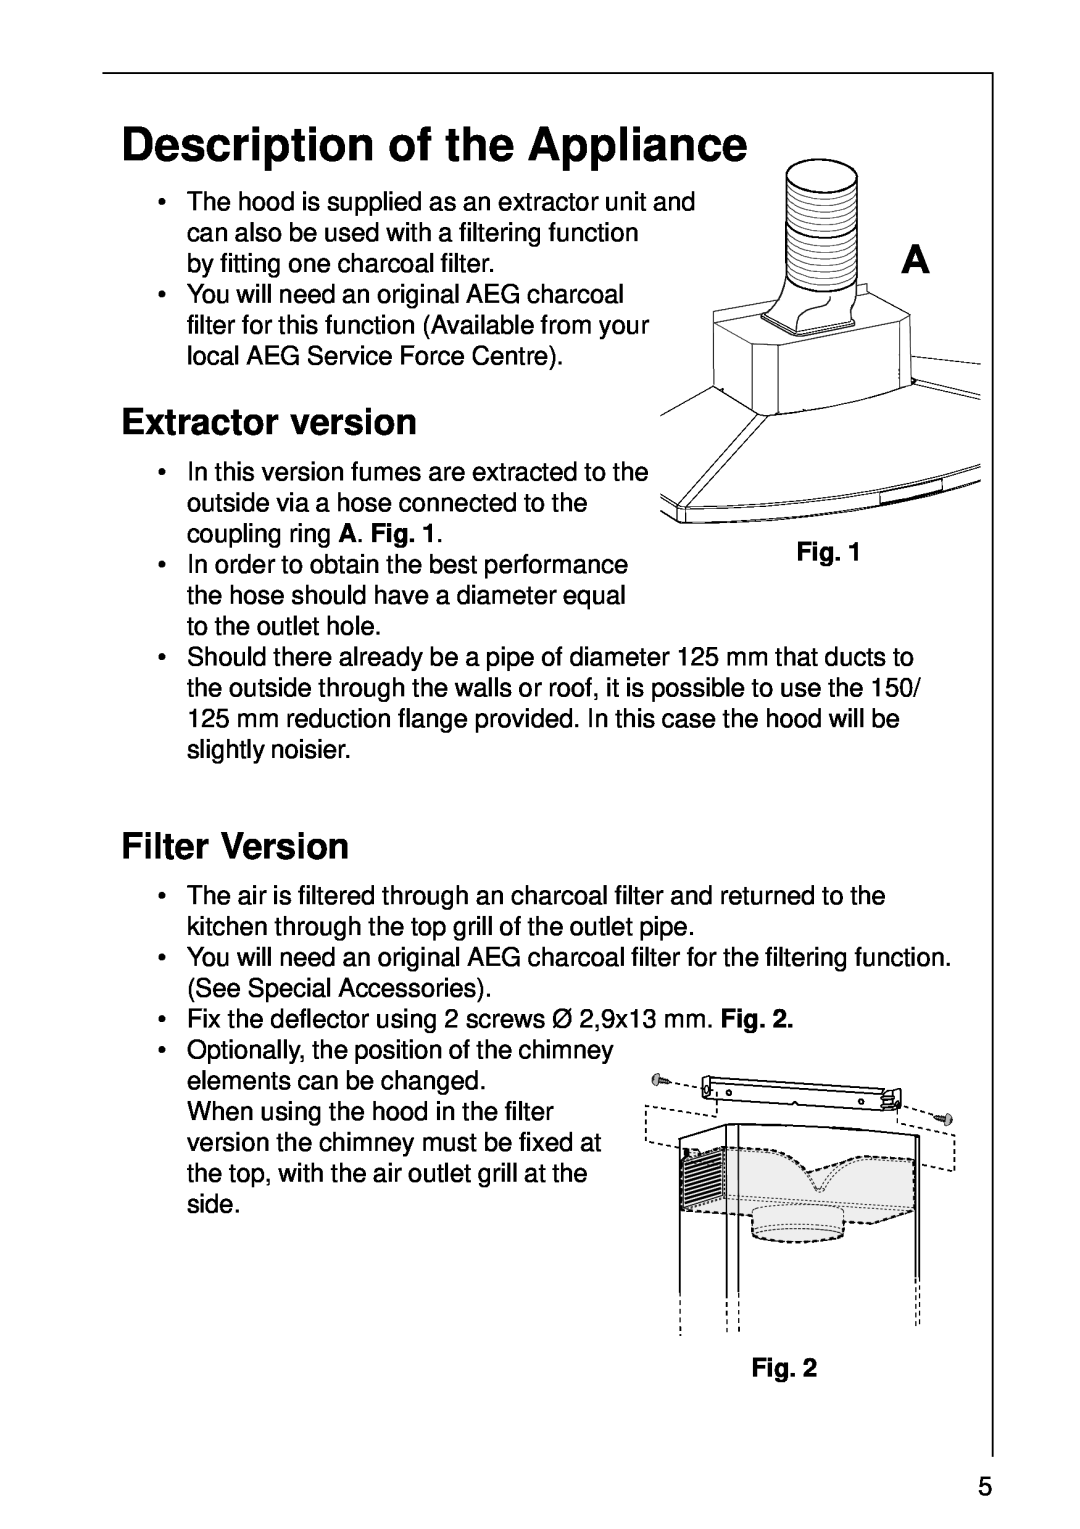 AEG 8190 D, 8361 D, 8290 D, 8391 D, 8260 D, 8390 D, 8360 D Description of the Appliance, Extractor version, Filter Version 